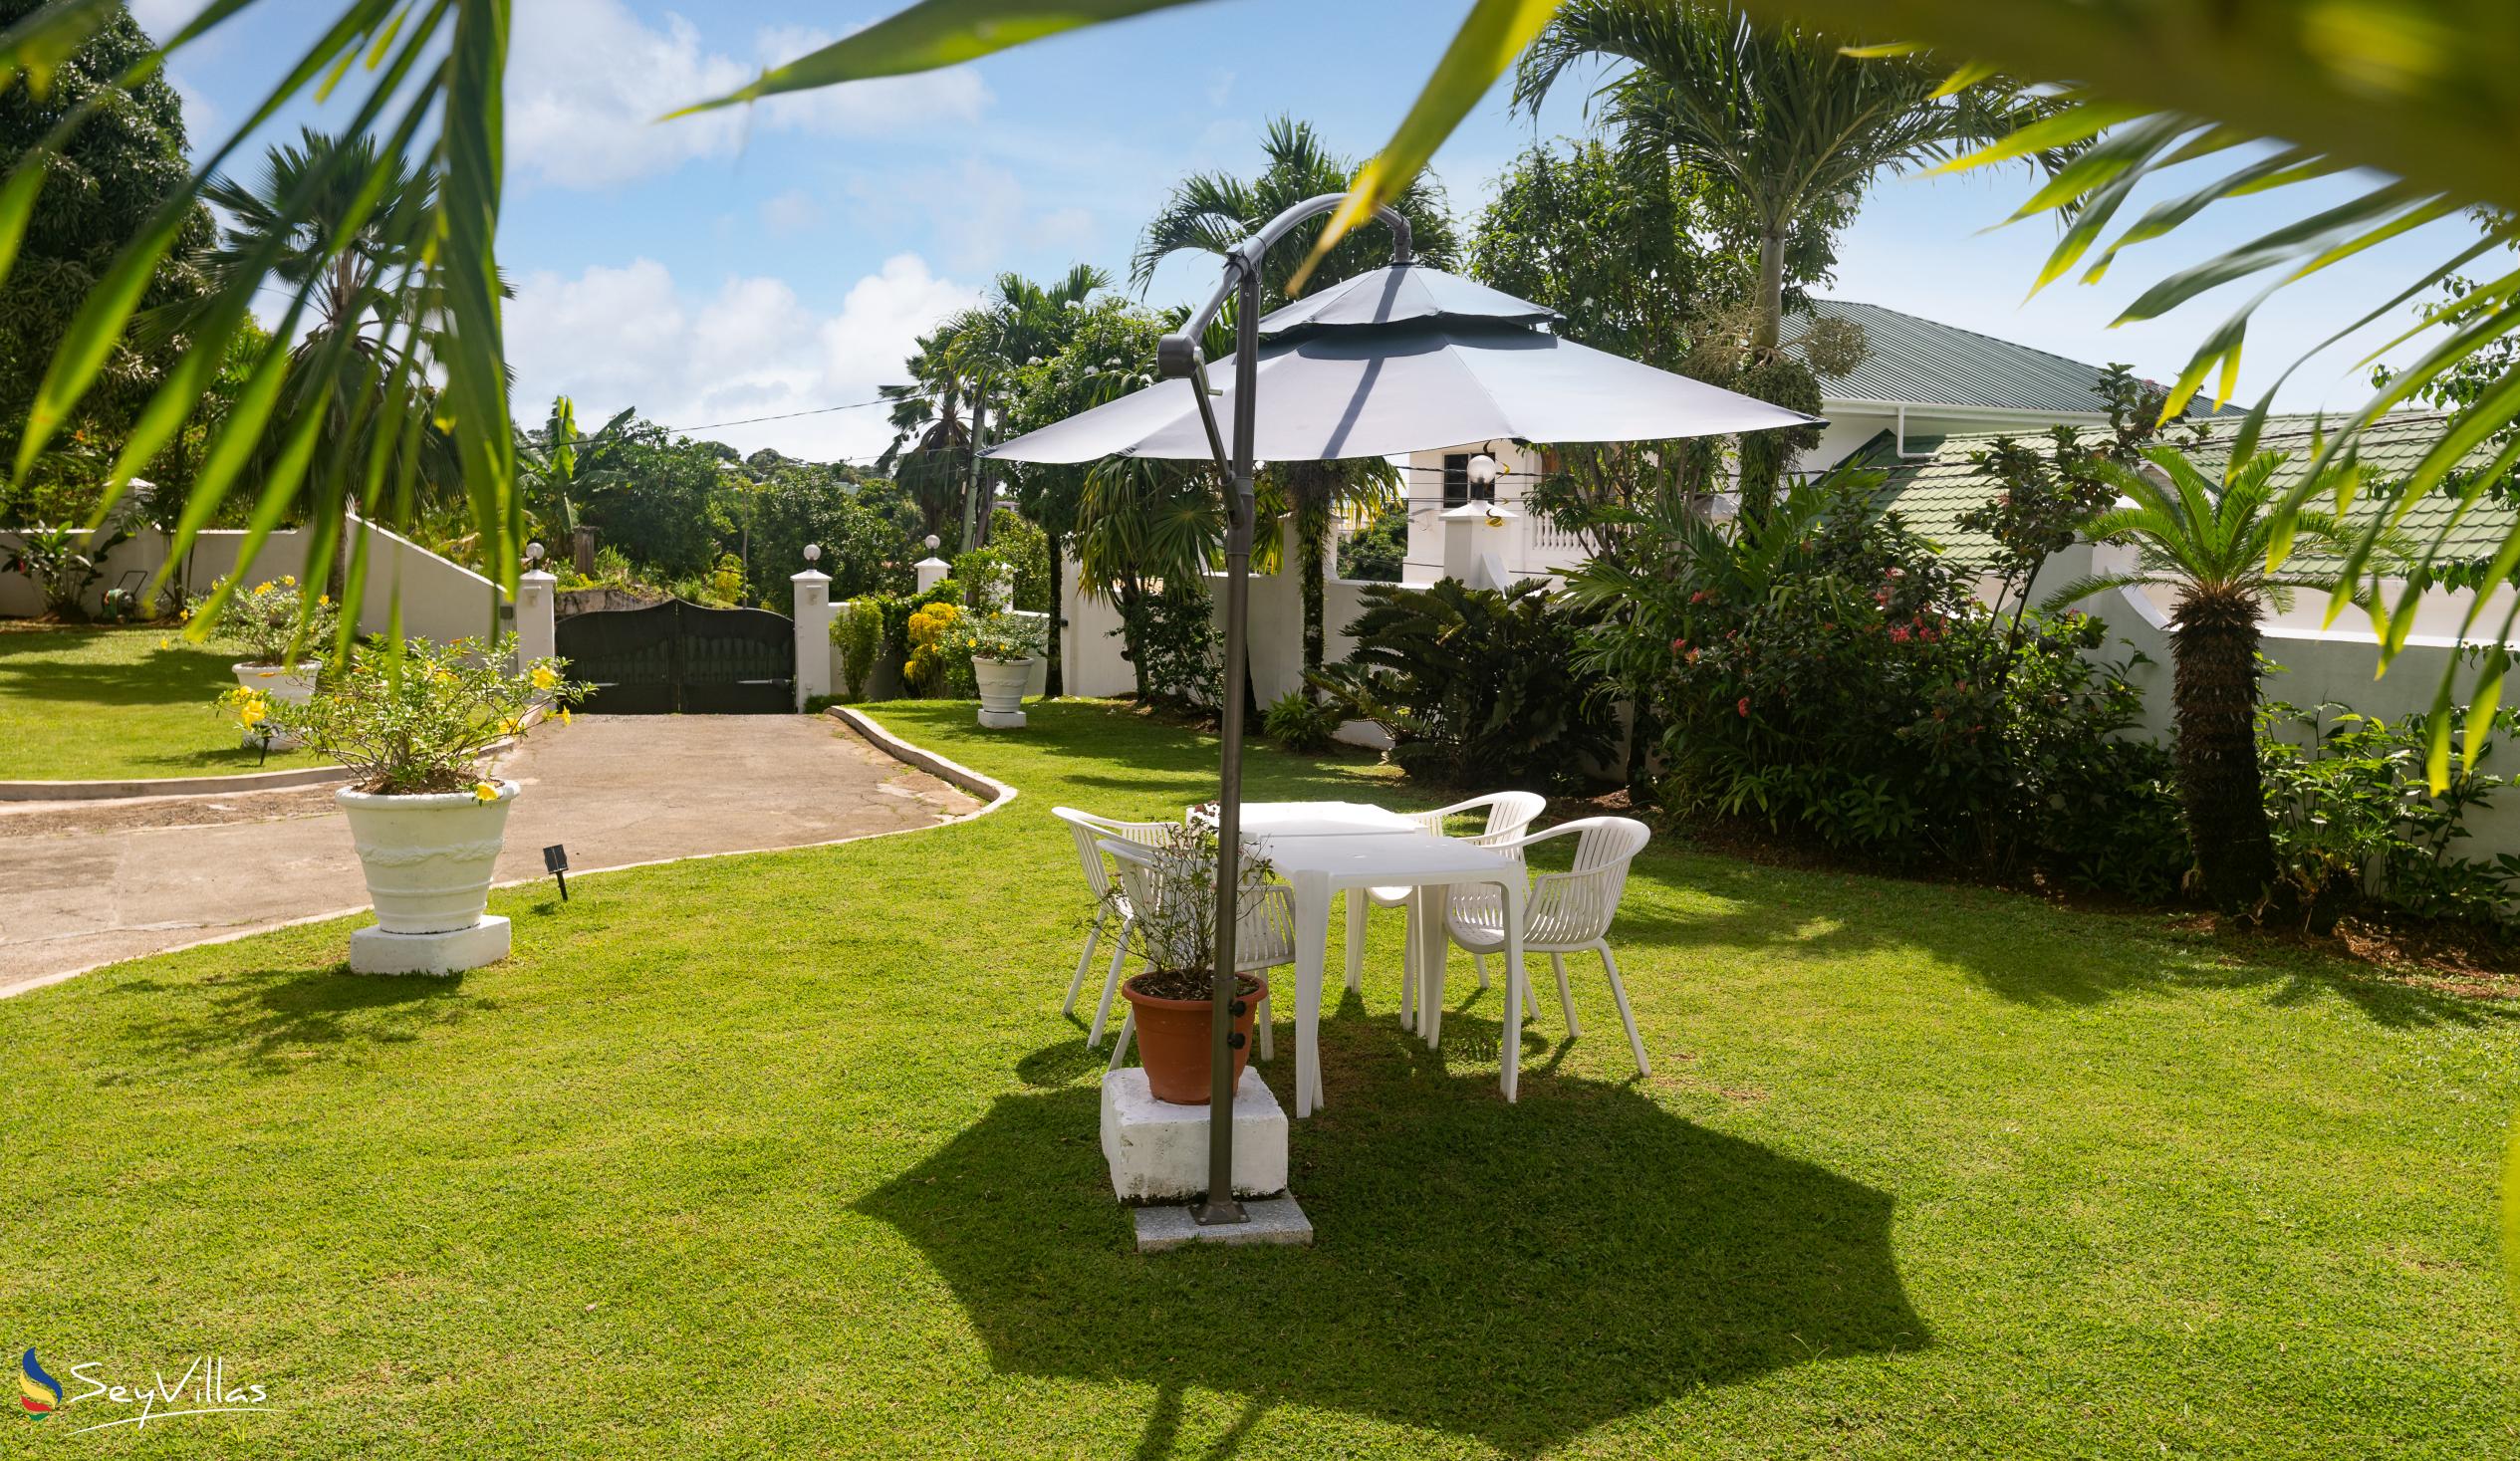 Foto 16: Villa Verde - Aussenbereich - Mahé (Seychellen)